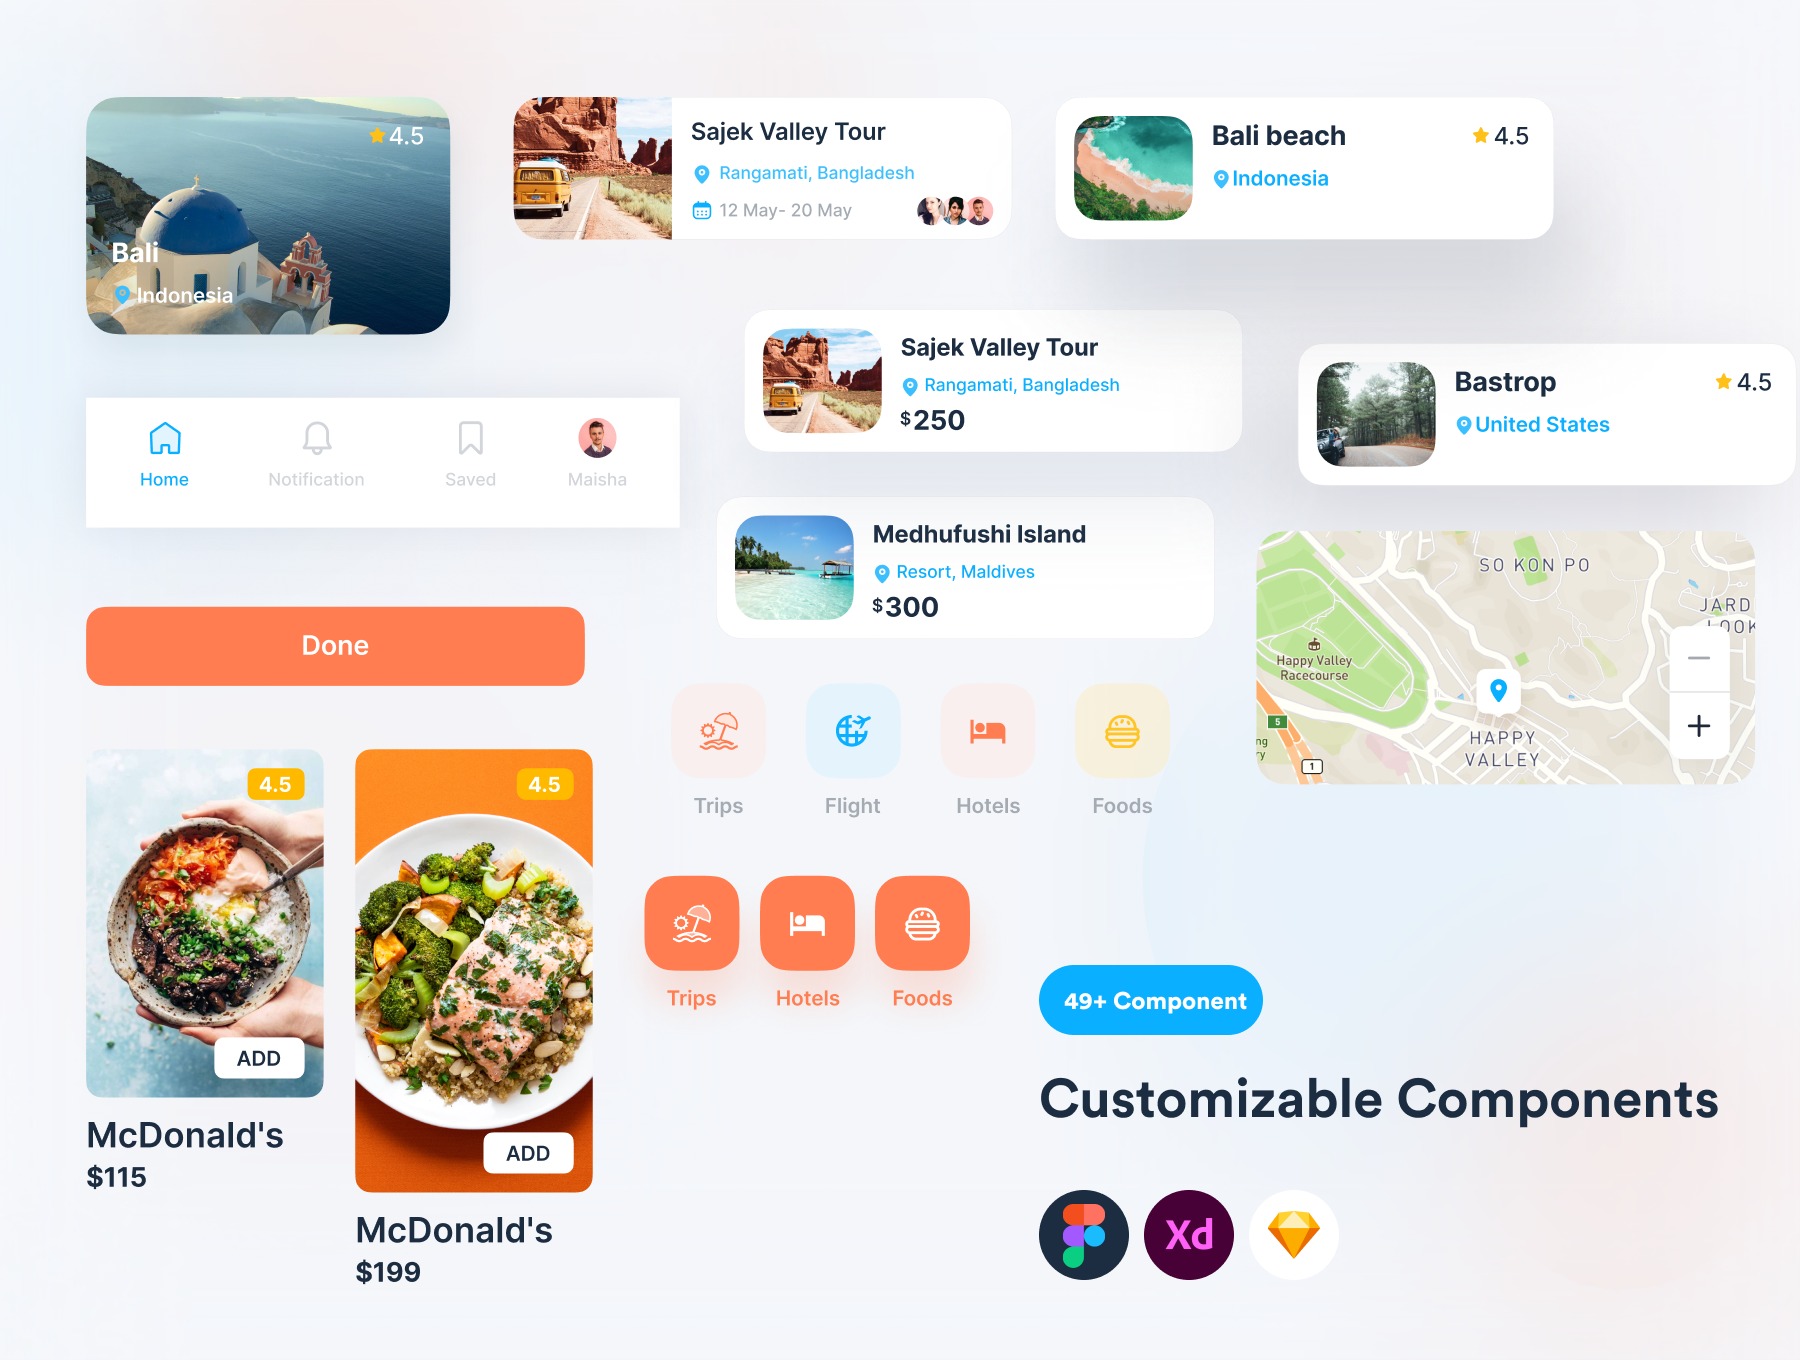 现代设计的旅行App应用 UI 套件素材 Travel App UI Kit